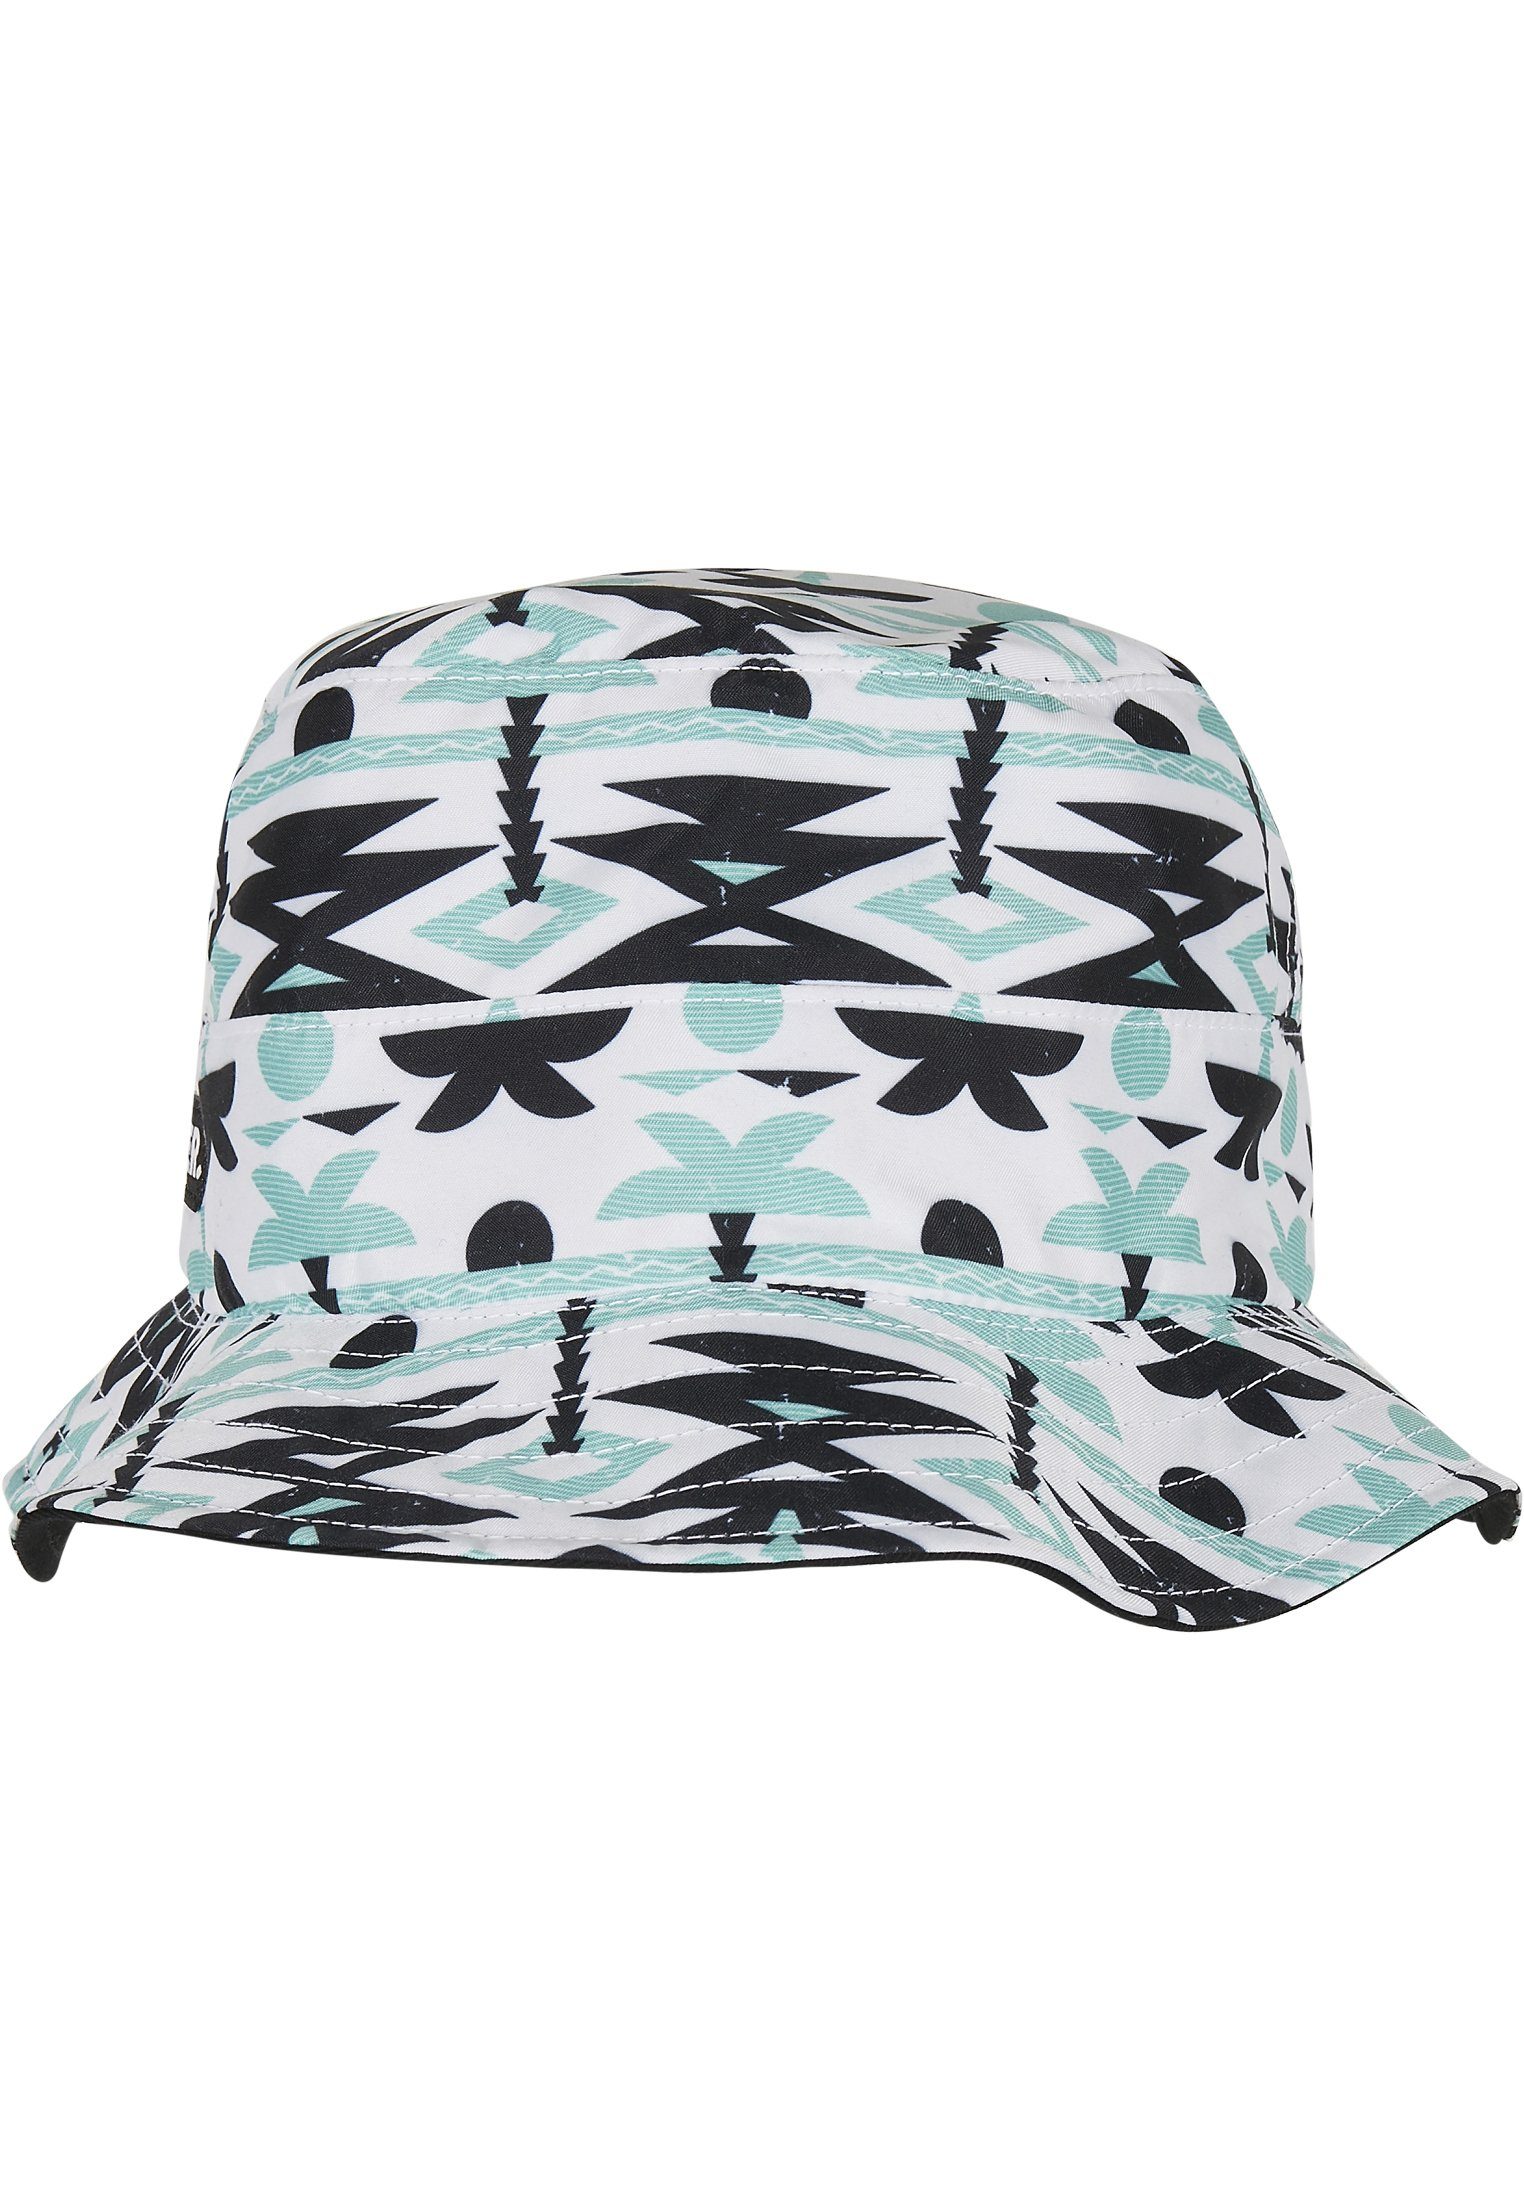 SONS Summer Flex Cap Bucket CAYLER Aztec Reversible WL Hat & C&S